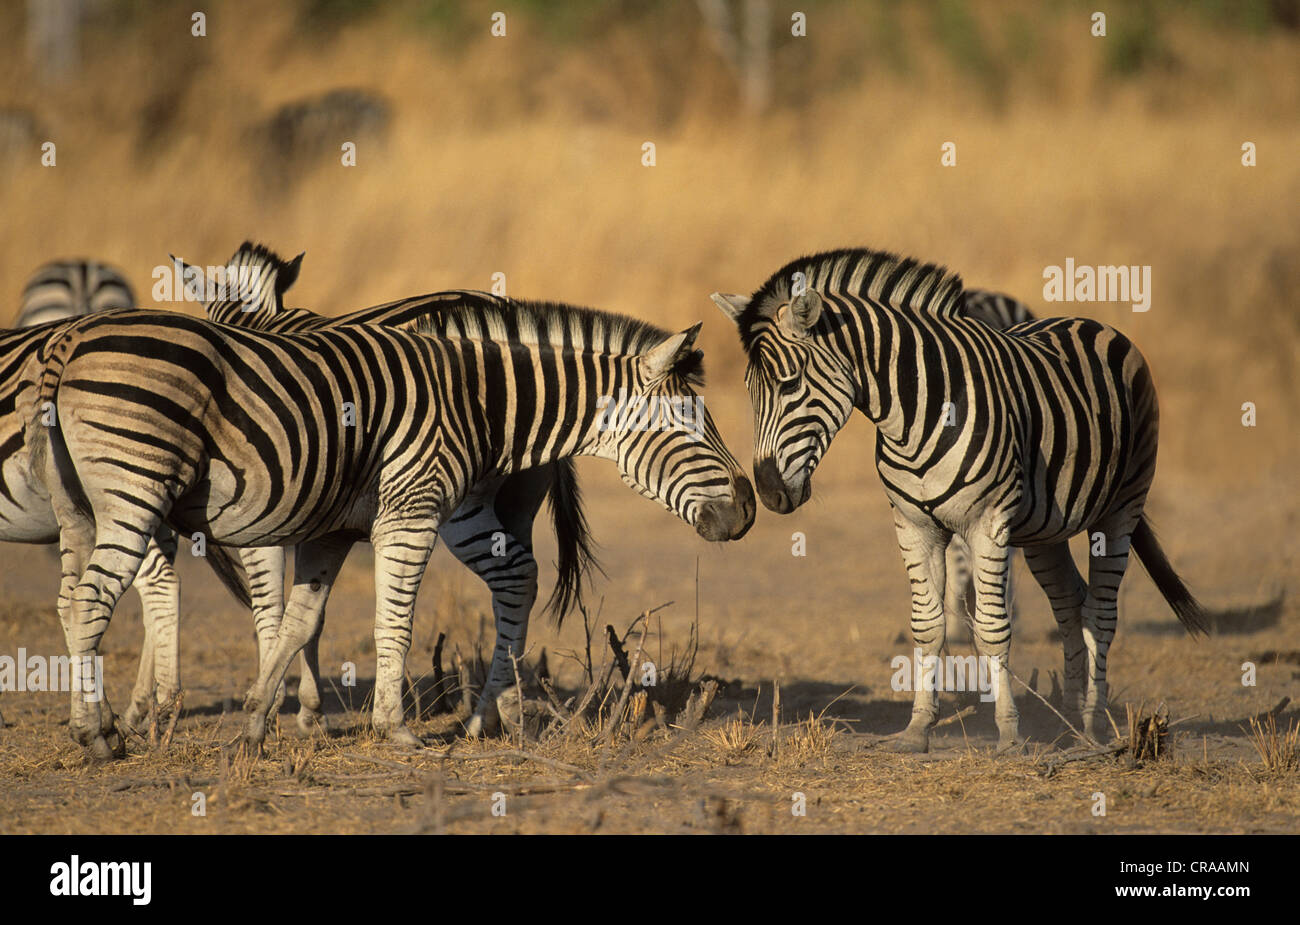 Cebras de burchell (Equus burchelli), el parque nacional Kruger, Sudáfrica Foto de stock